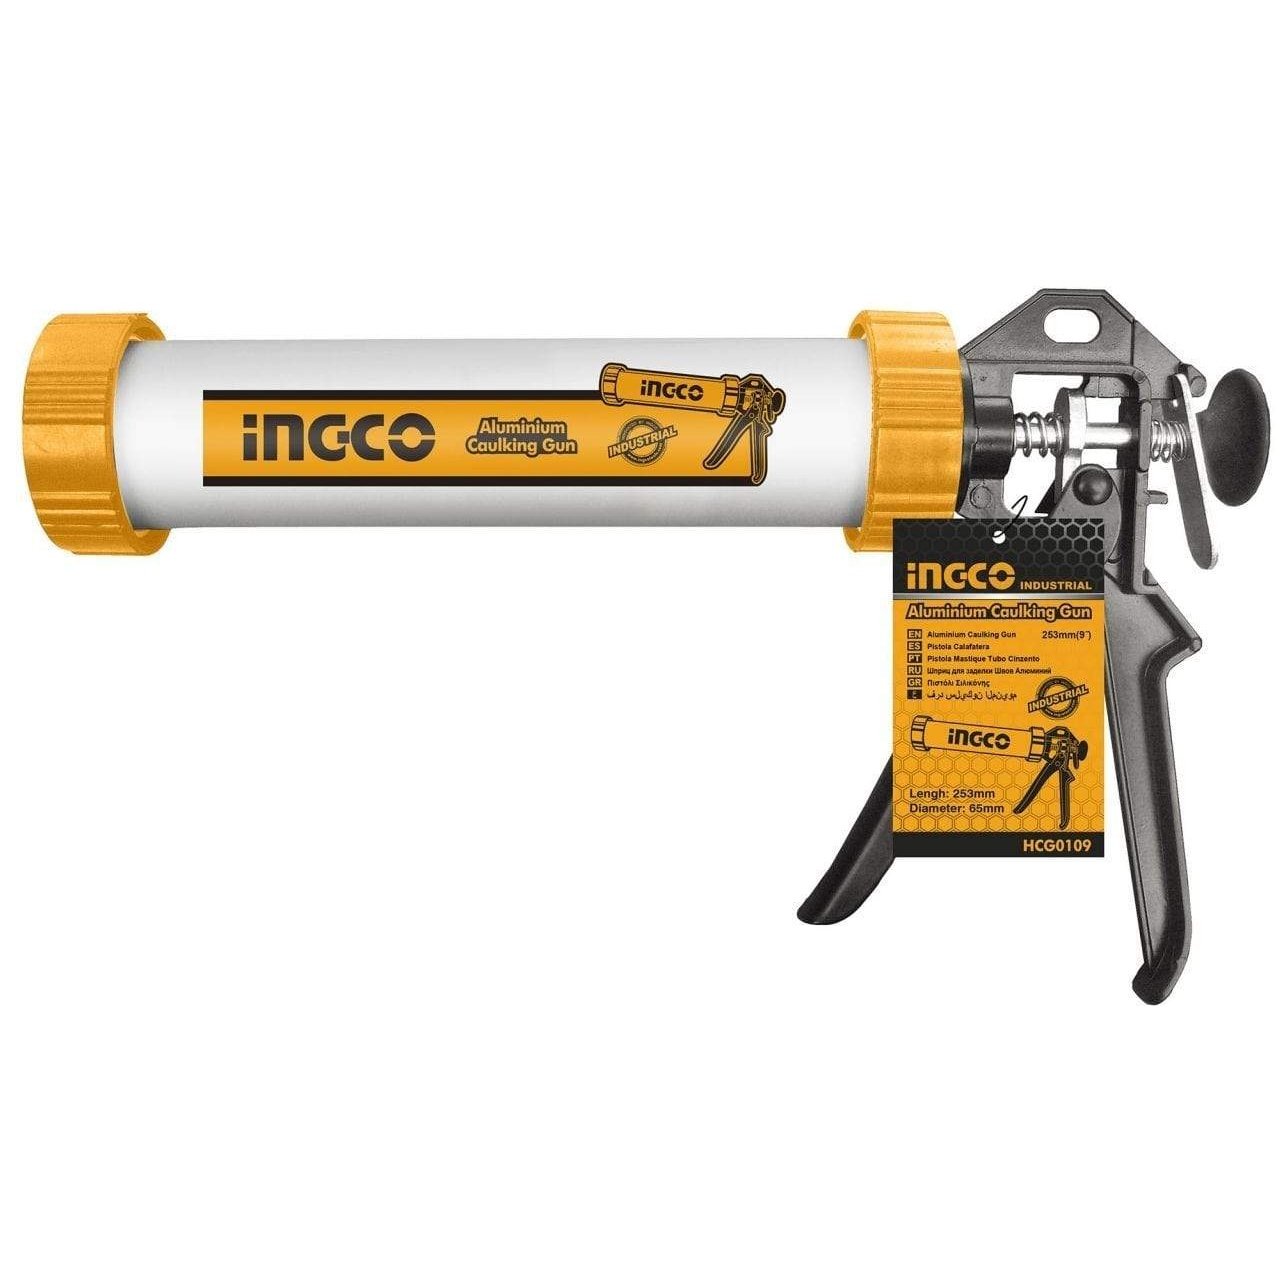 Ingco 9" Aluminium Caulking Gun - HCG0109